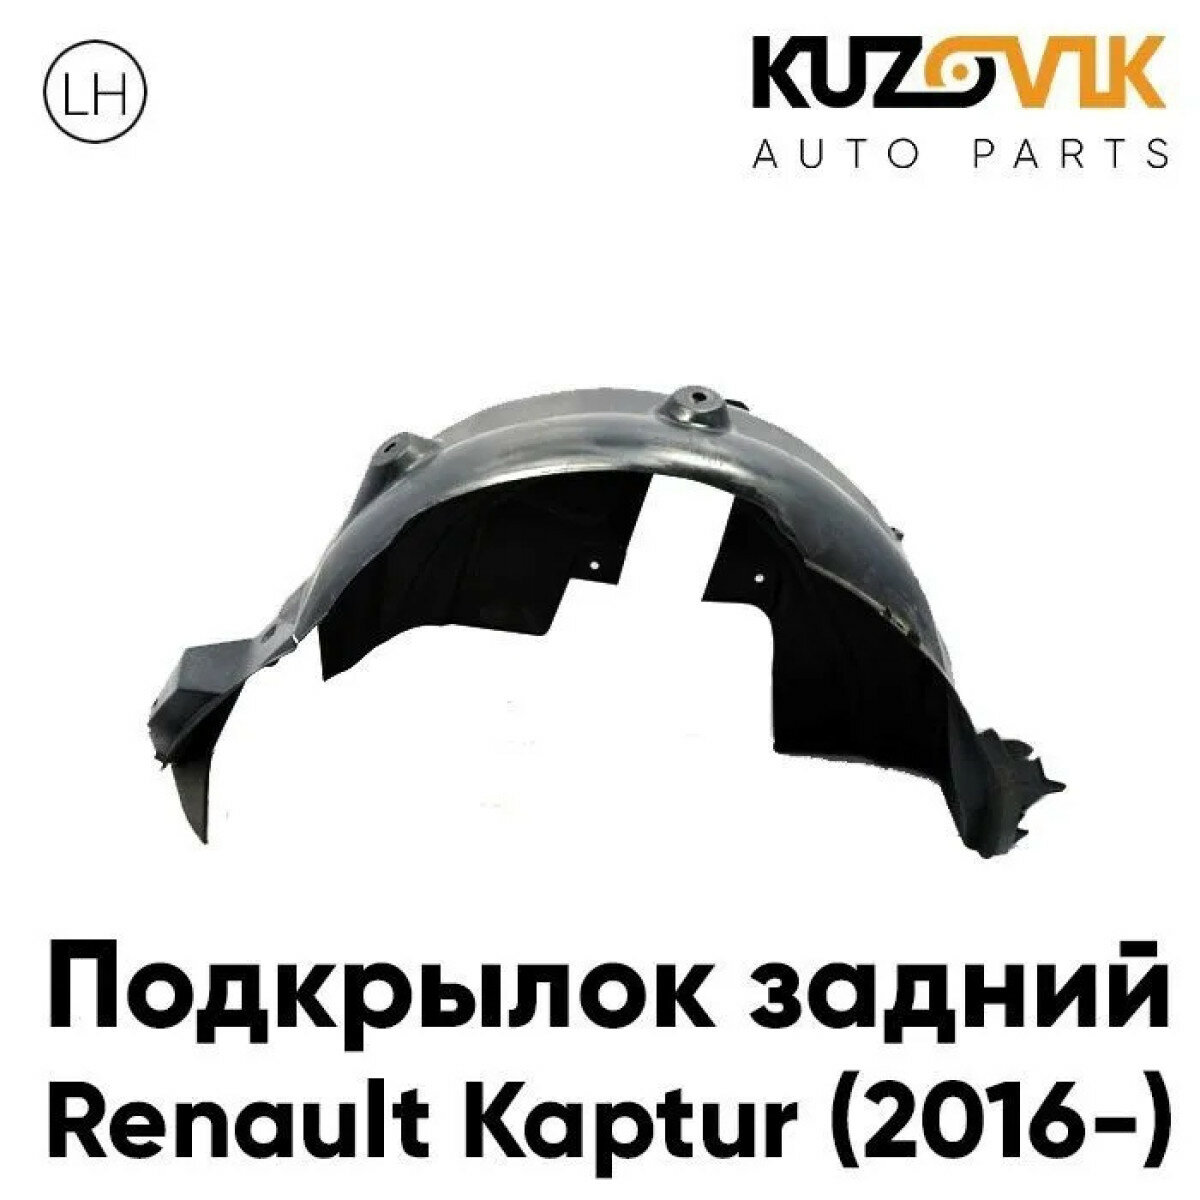 Подкрылок задний левый Renault Kaptur (2016-)